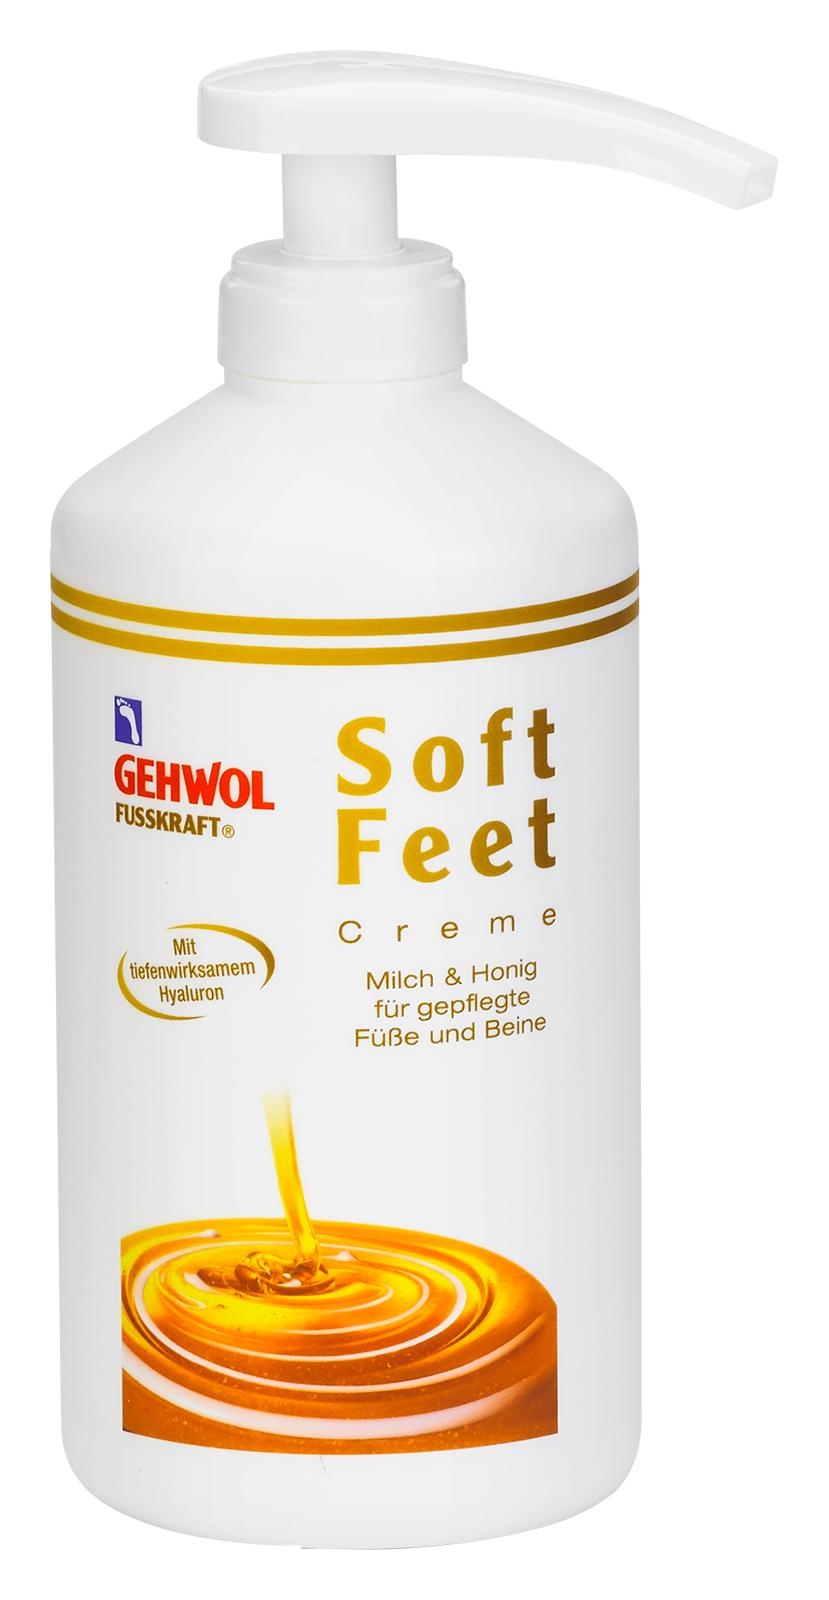 GEHWOL FUSSKRAFT Soft Feet Creme 500 ml